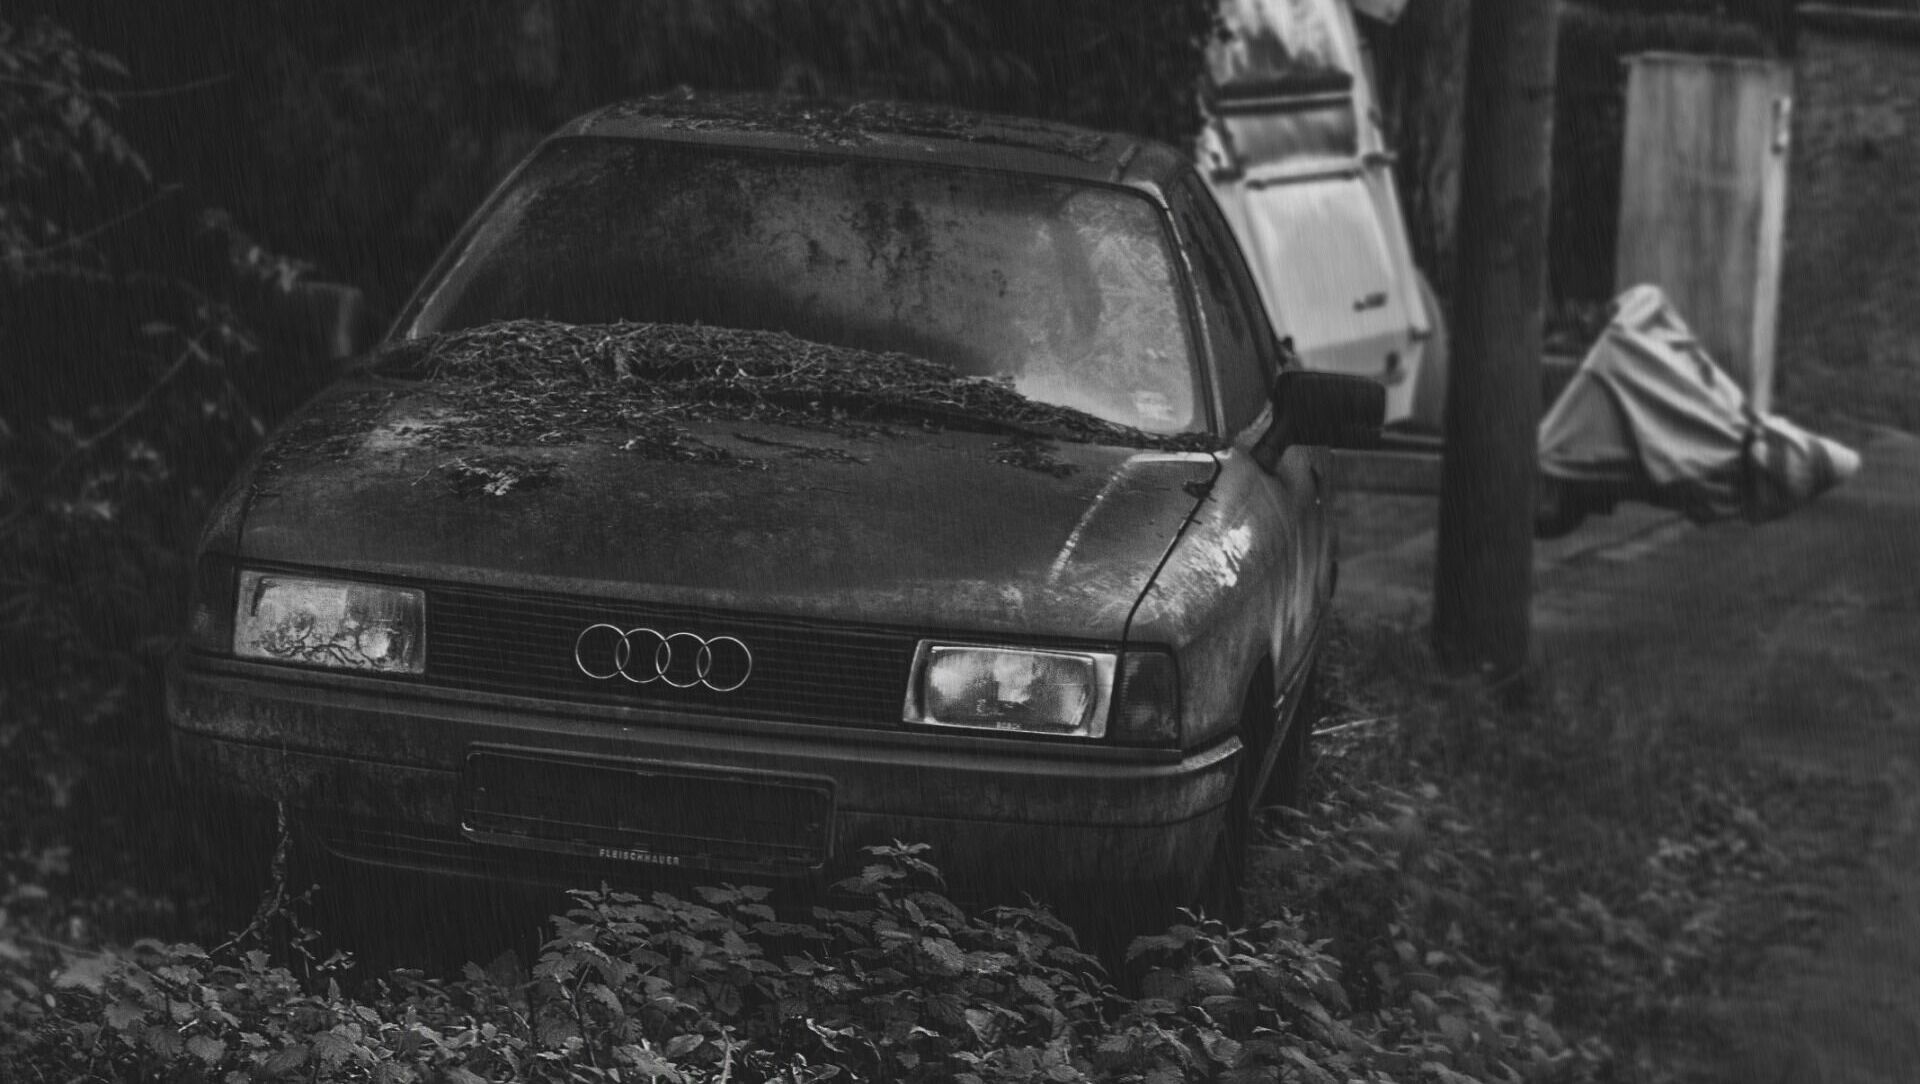 В Ростовской области осудят участника разборок из 90-х, утопившего людей из-за Audi